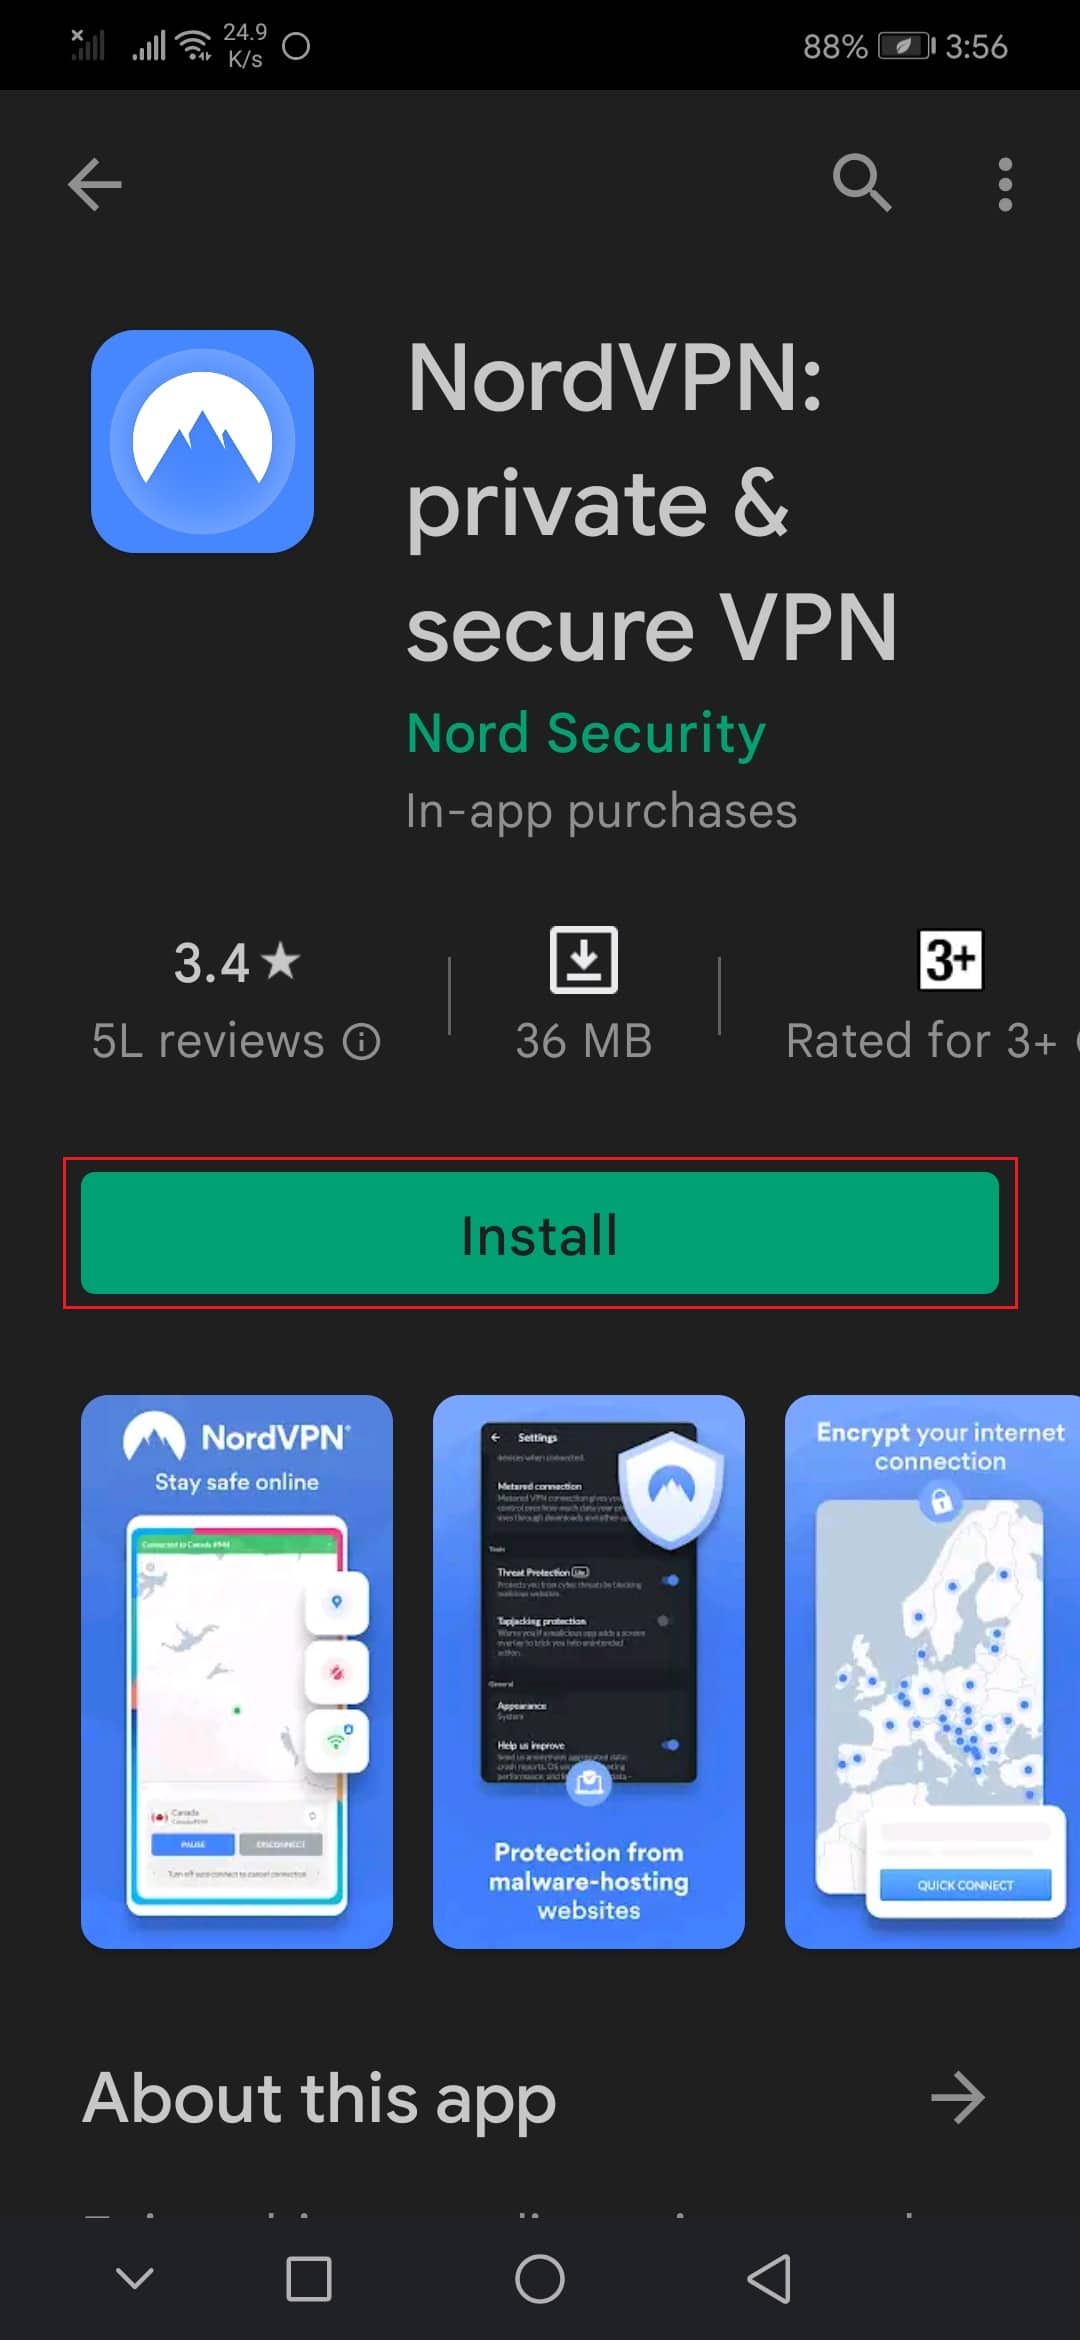 nordVPN android app playstore. Bästa gratis obegränsade VPN för Android